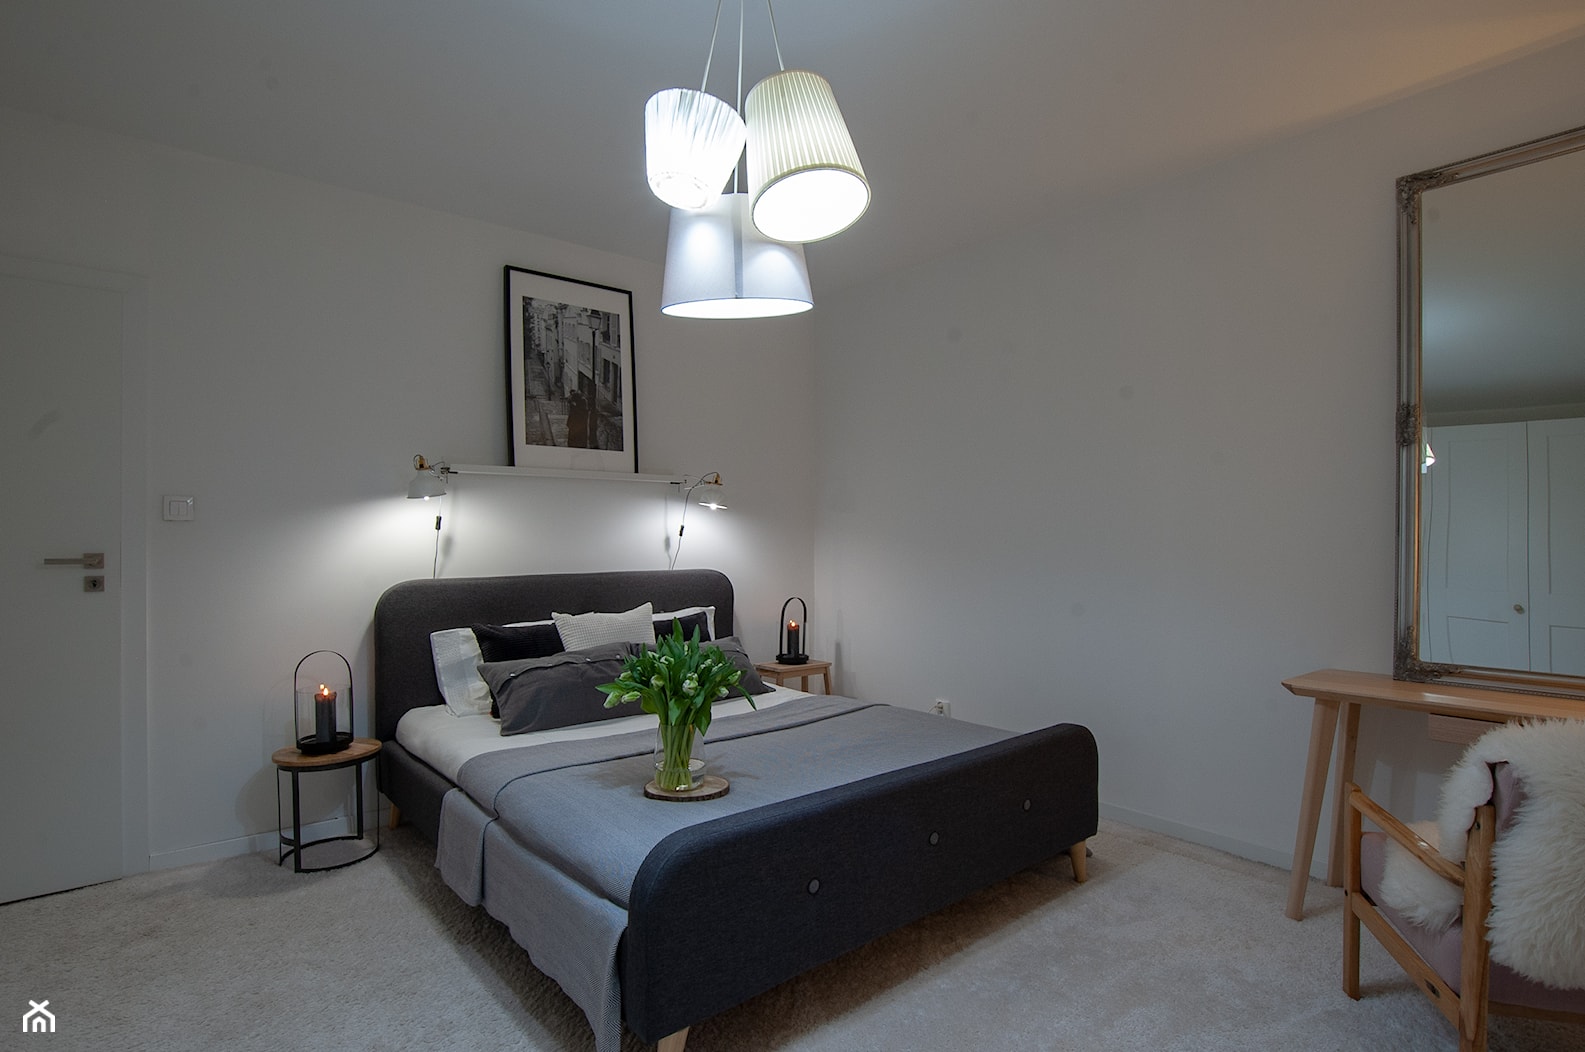 minimalistyczna sypialnia w stylu eklektycznym, skandynawskim - Sypialnia, styl skandynawski - zdjęcie od P.Projektuje - Homebook